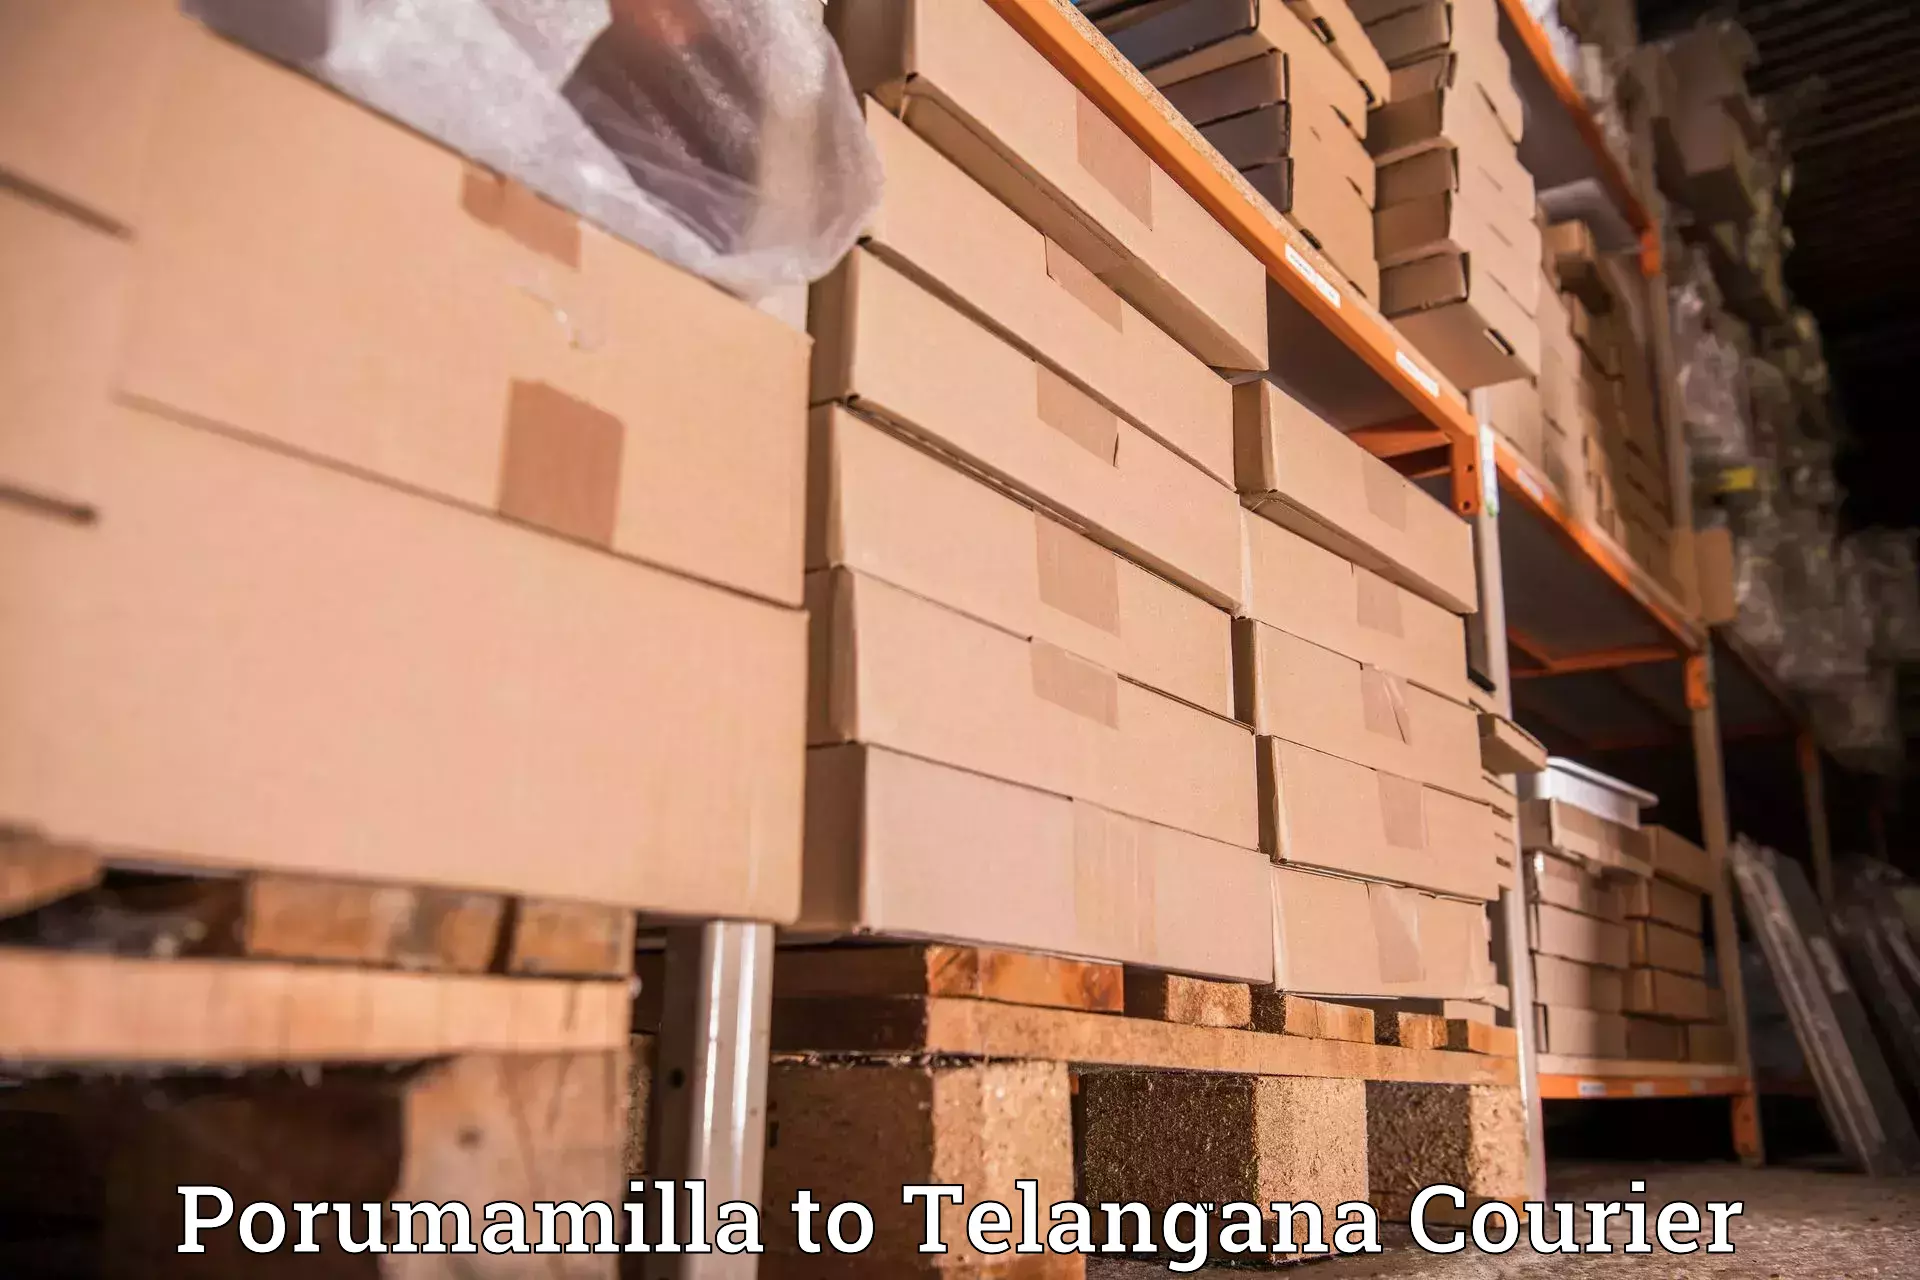 Courier service comparison Porumamilla to Mulugu